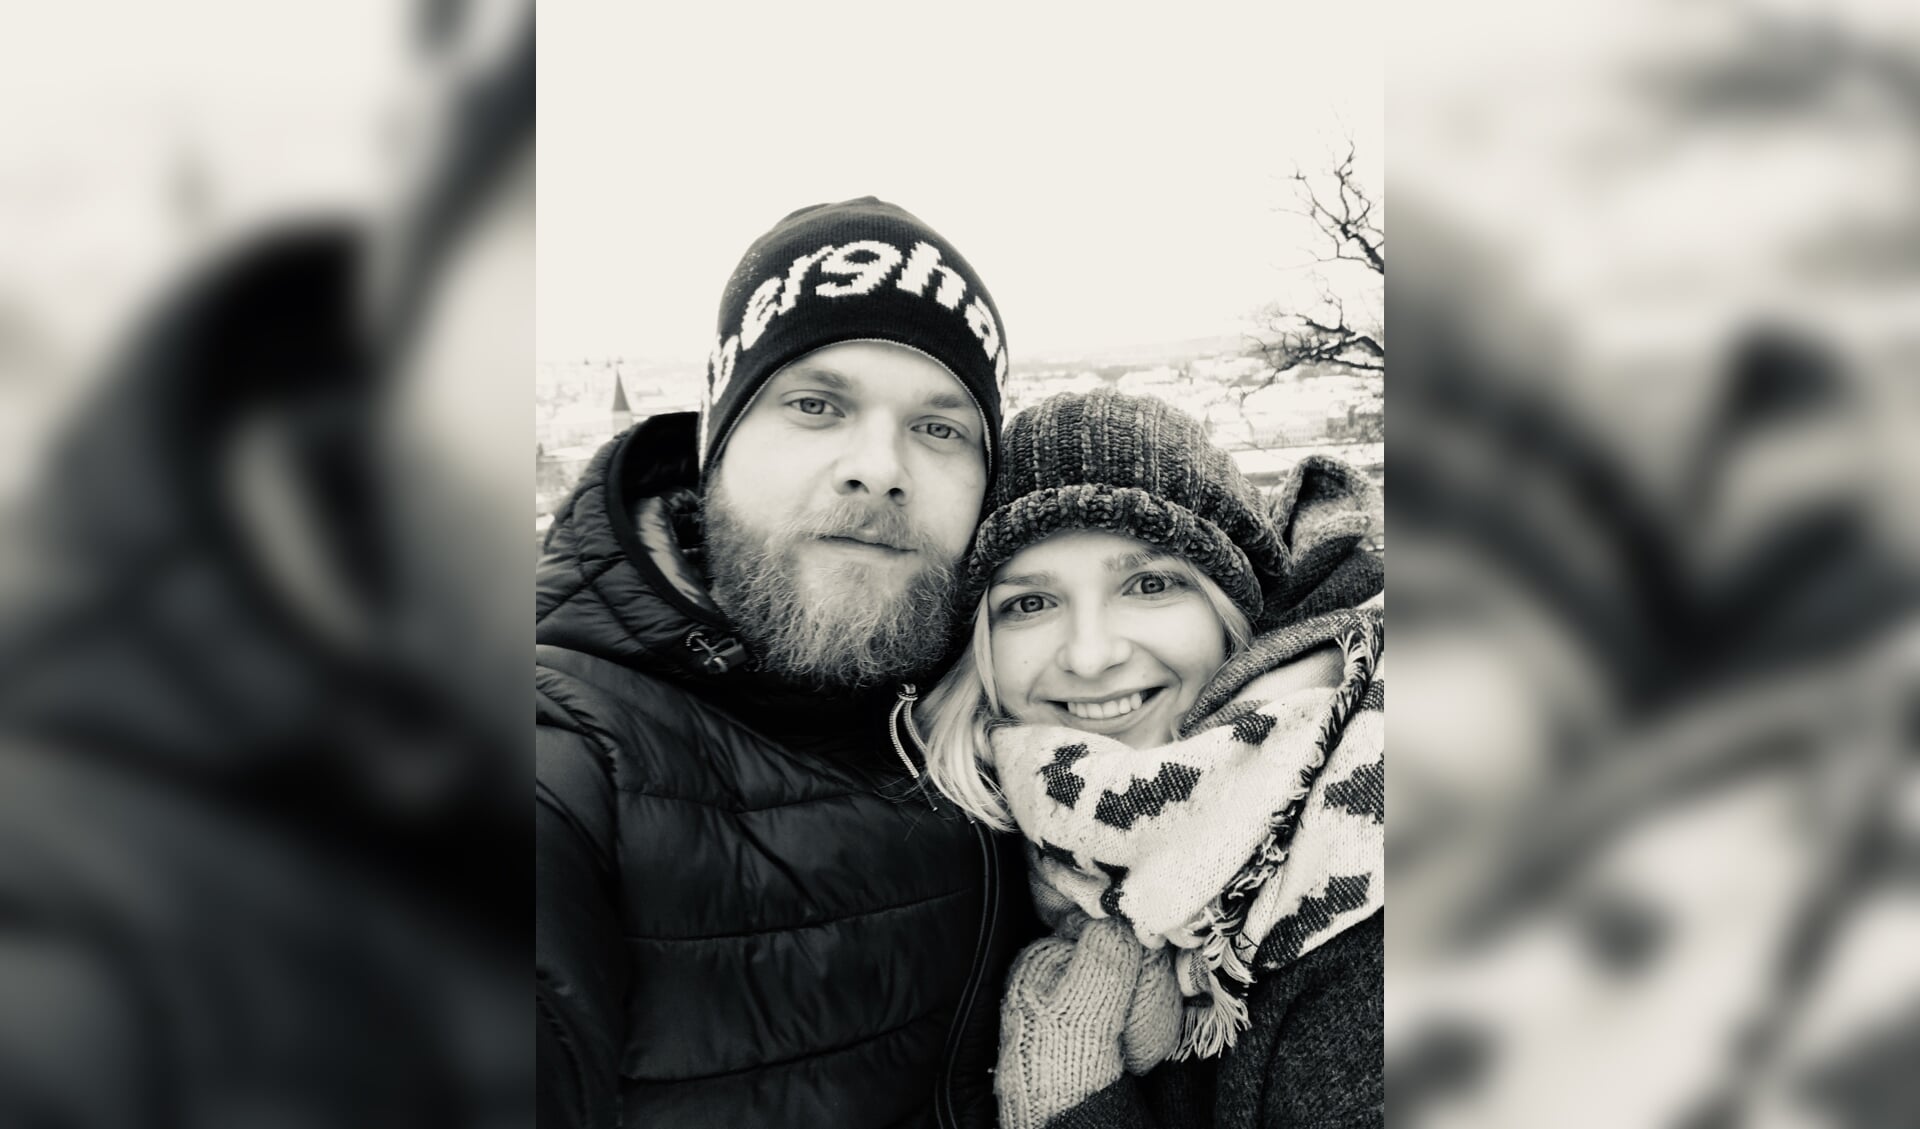  Eerste selfie samen in het koude en besneeuwde Kaunas. Deze foto was eigenlijk bedoeld als afscheids-/herinneringsfoto. Foto: eigen foto.